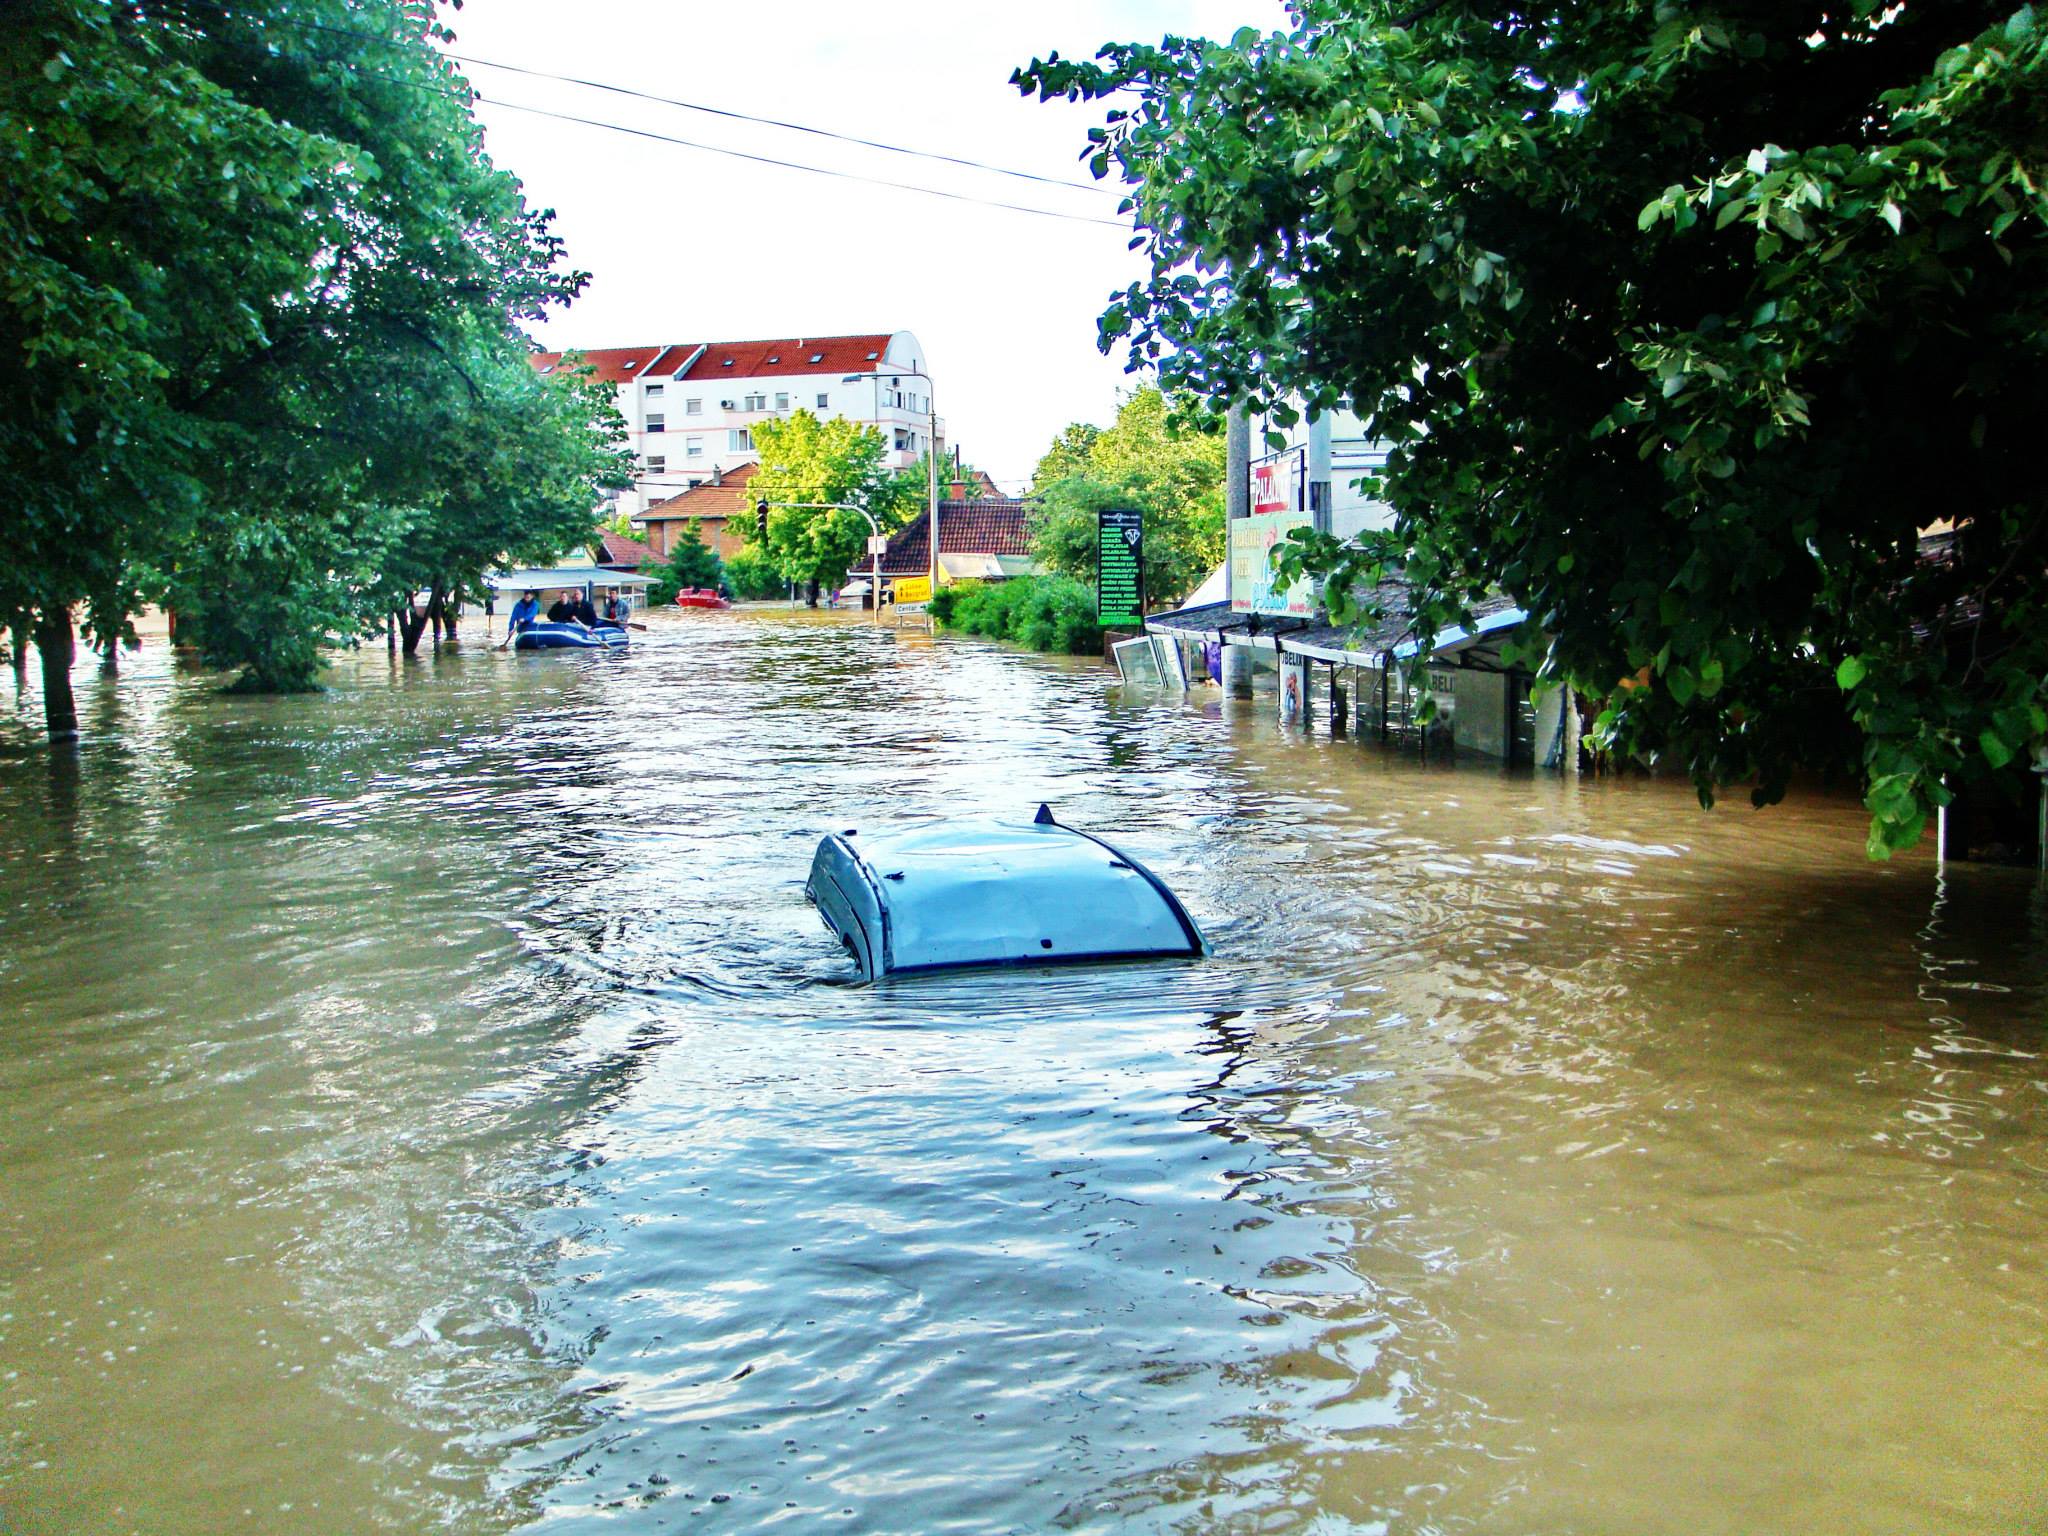 Тренутни број жртава поплаве у Обреновцу прешао 127 људи